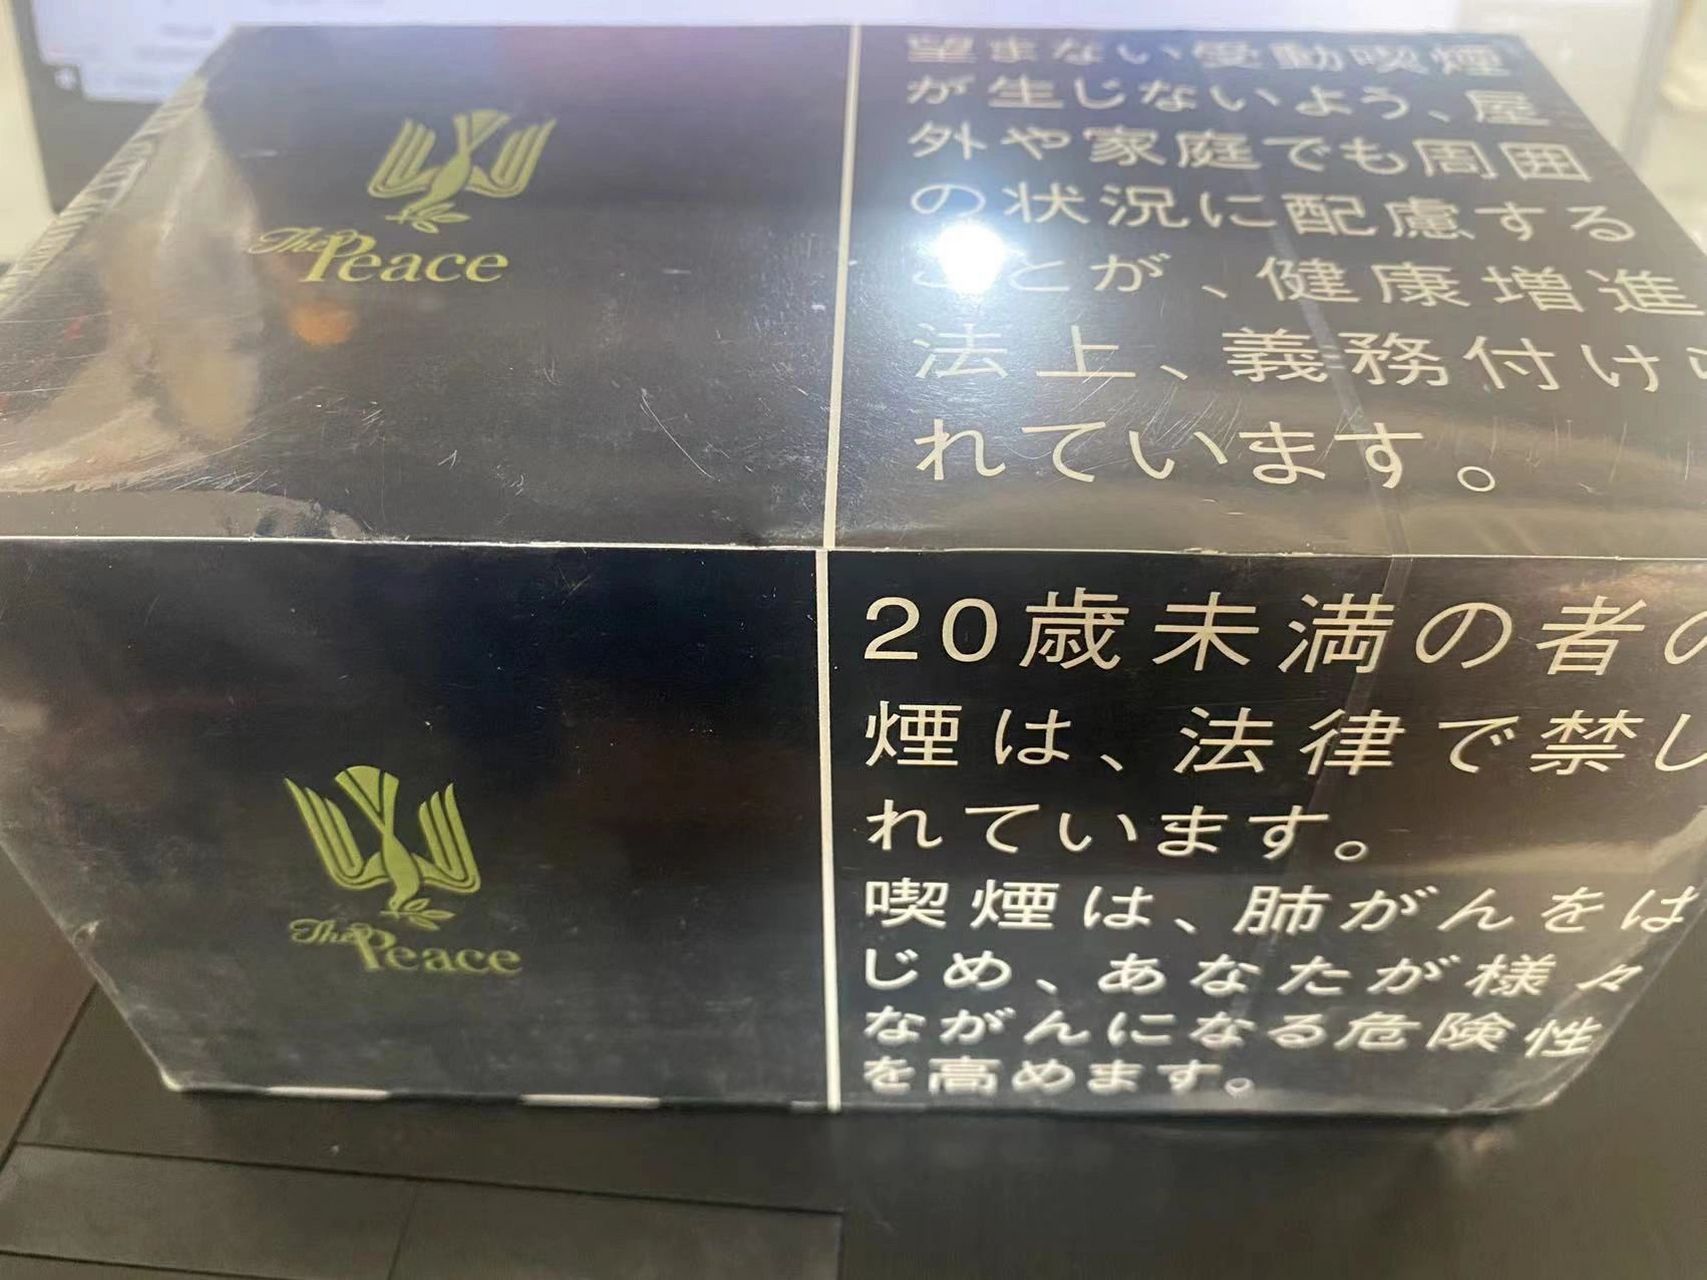 peace和平铁盒 据说这是日本最贵,和平铁盒,绝对的土豪款,包装精细